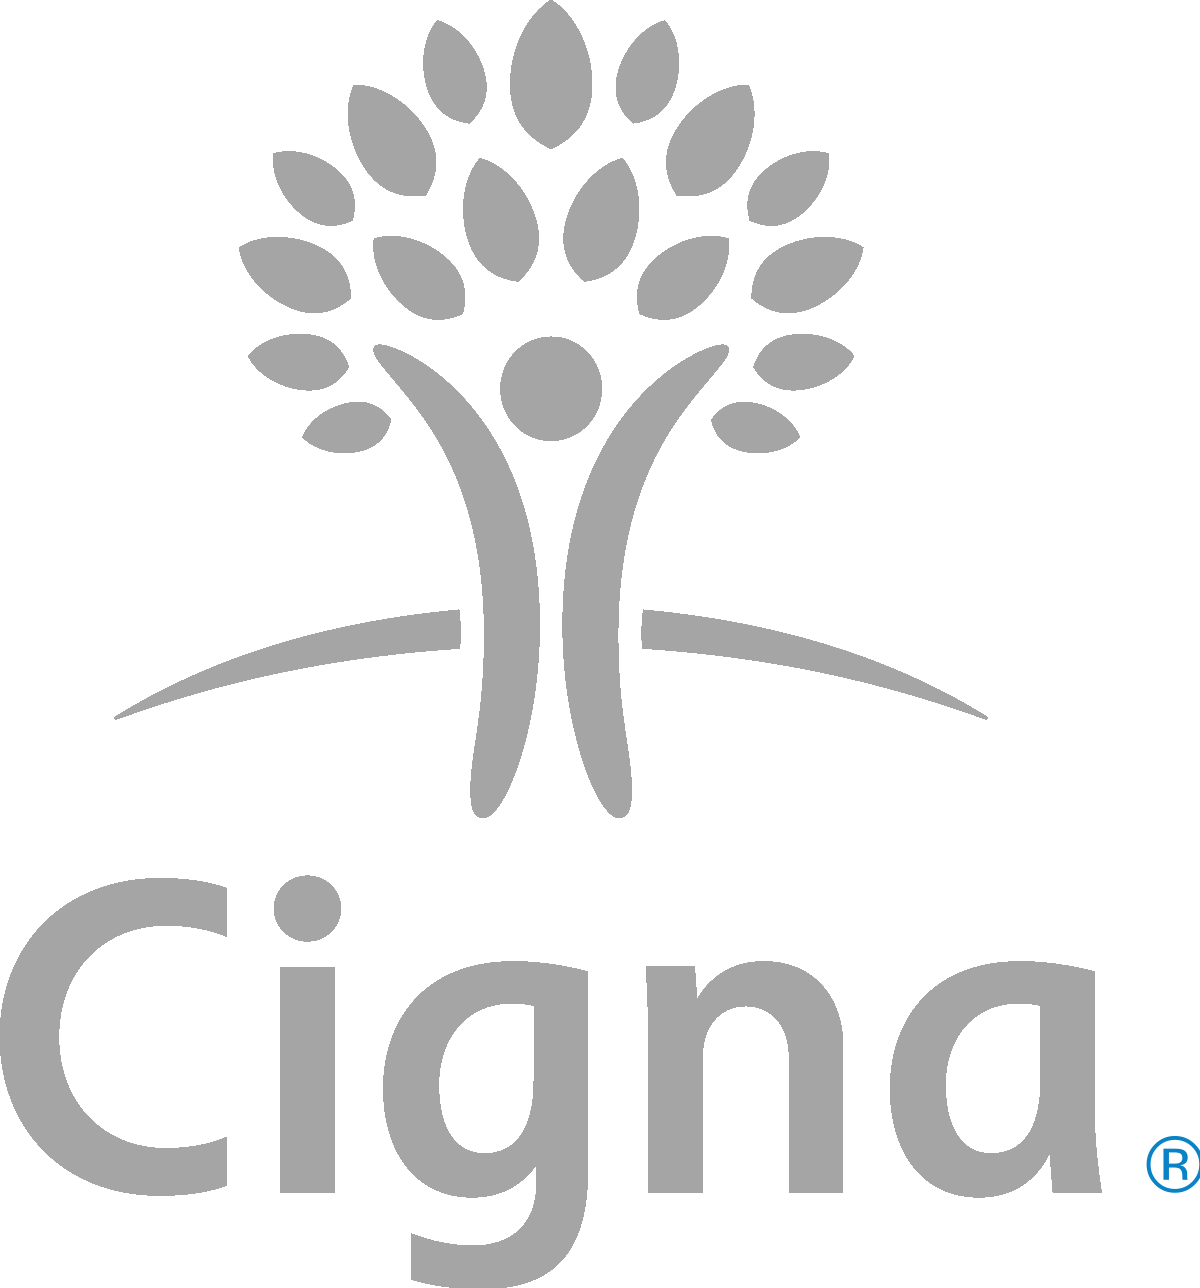 1200px-Cigna_logo.svg